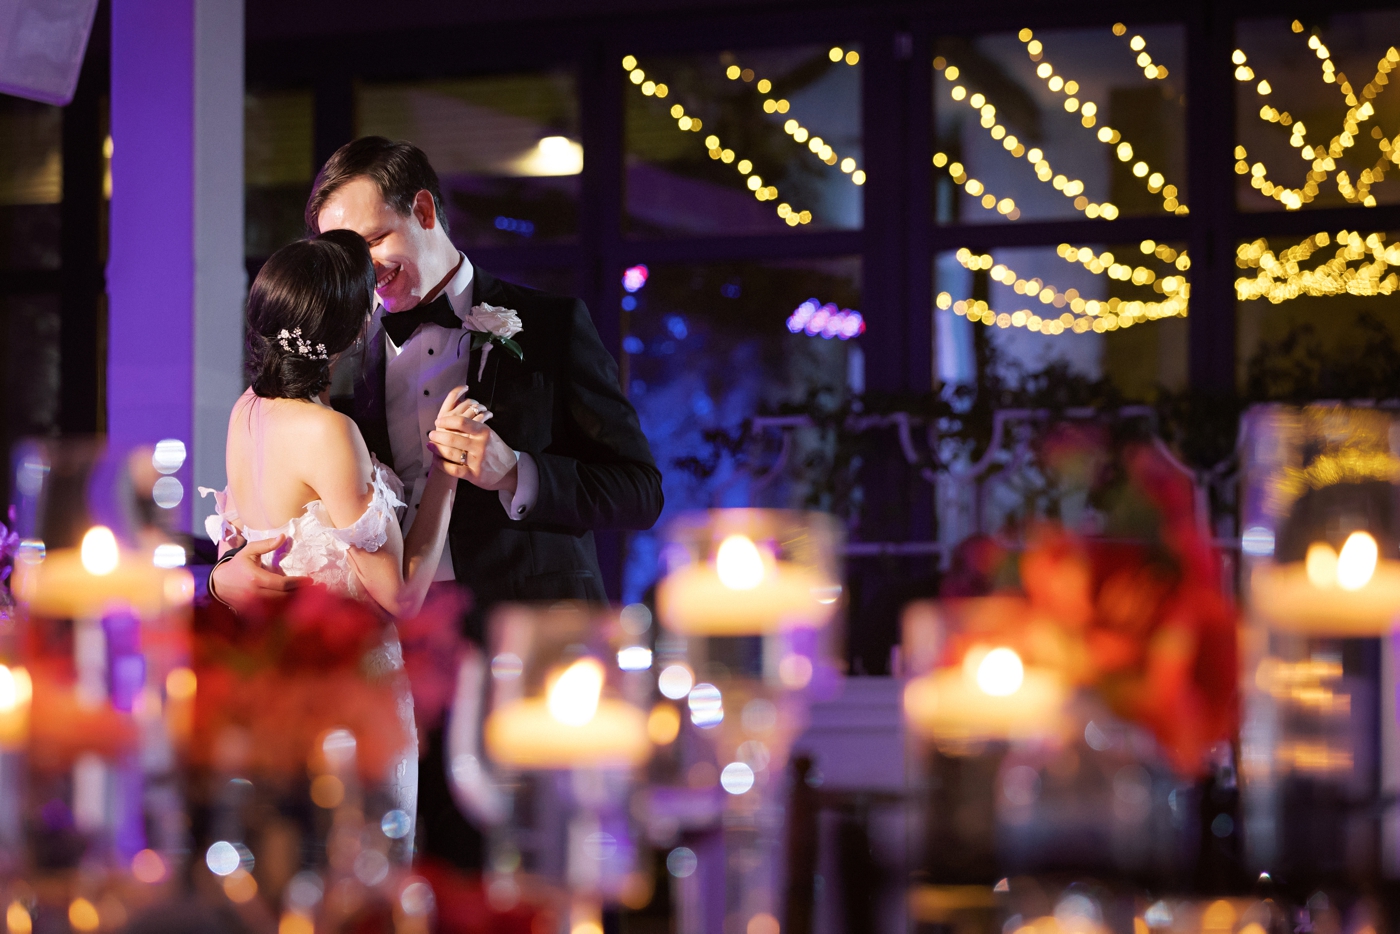 2022 wedding trends: No garter or bouquet toss